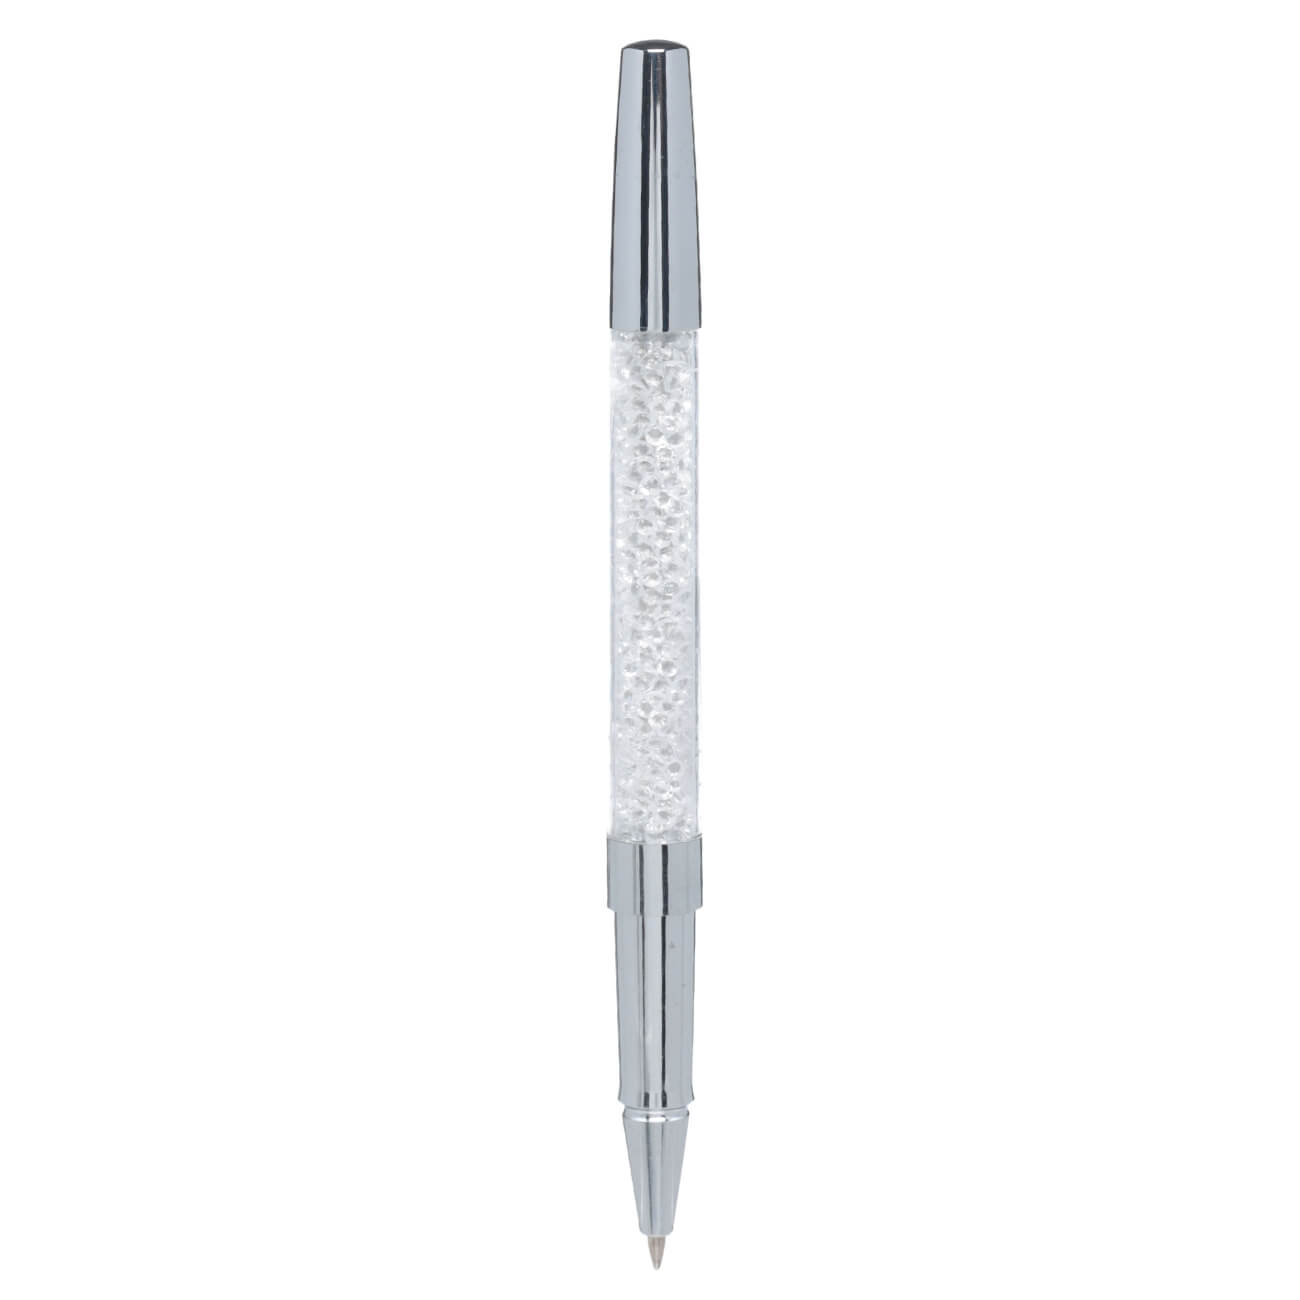 Ручка гелевая, 15 см, сталь, серебристая, Кристаллы, Draw cristal